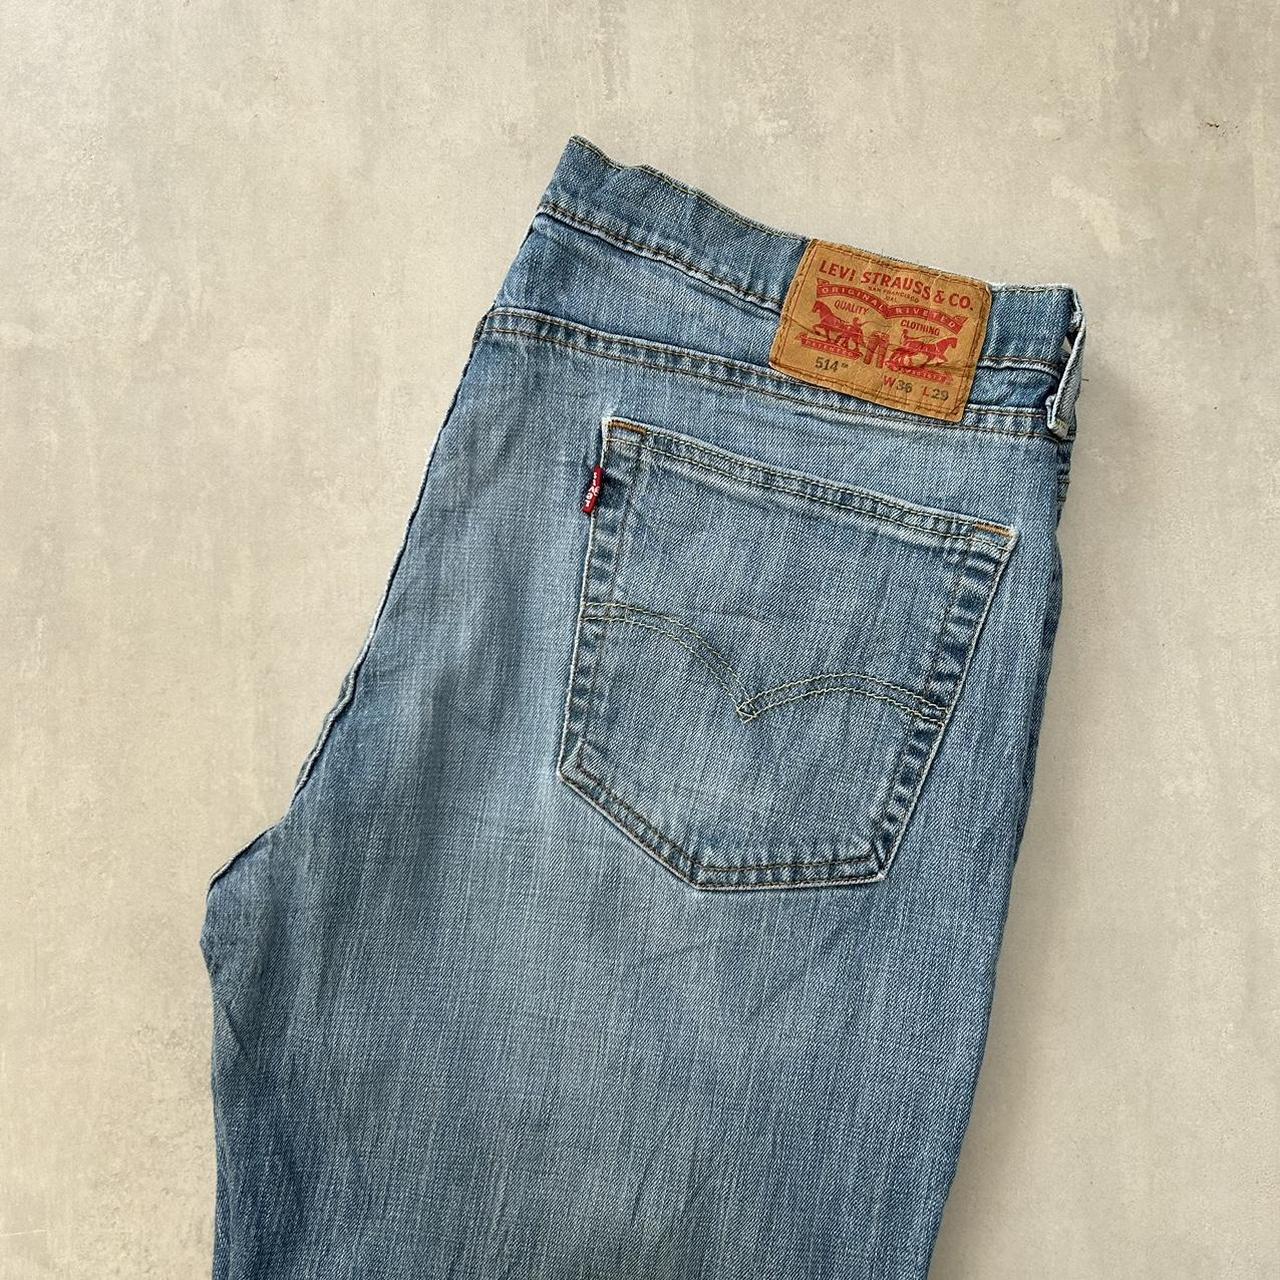 Levis 514 Jeans Good Condition Model 5”10 - 36 x... - Depop